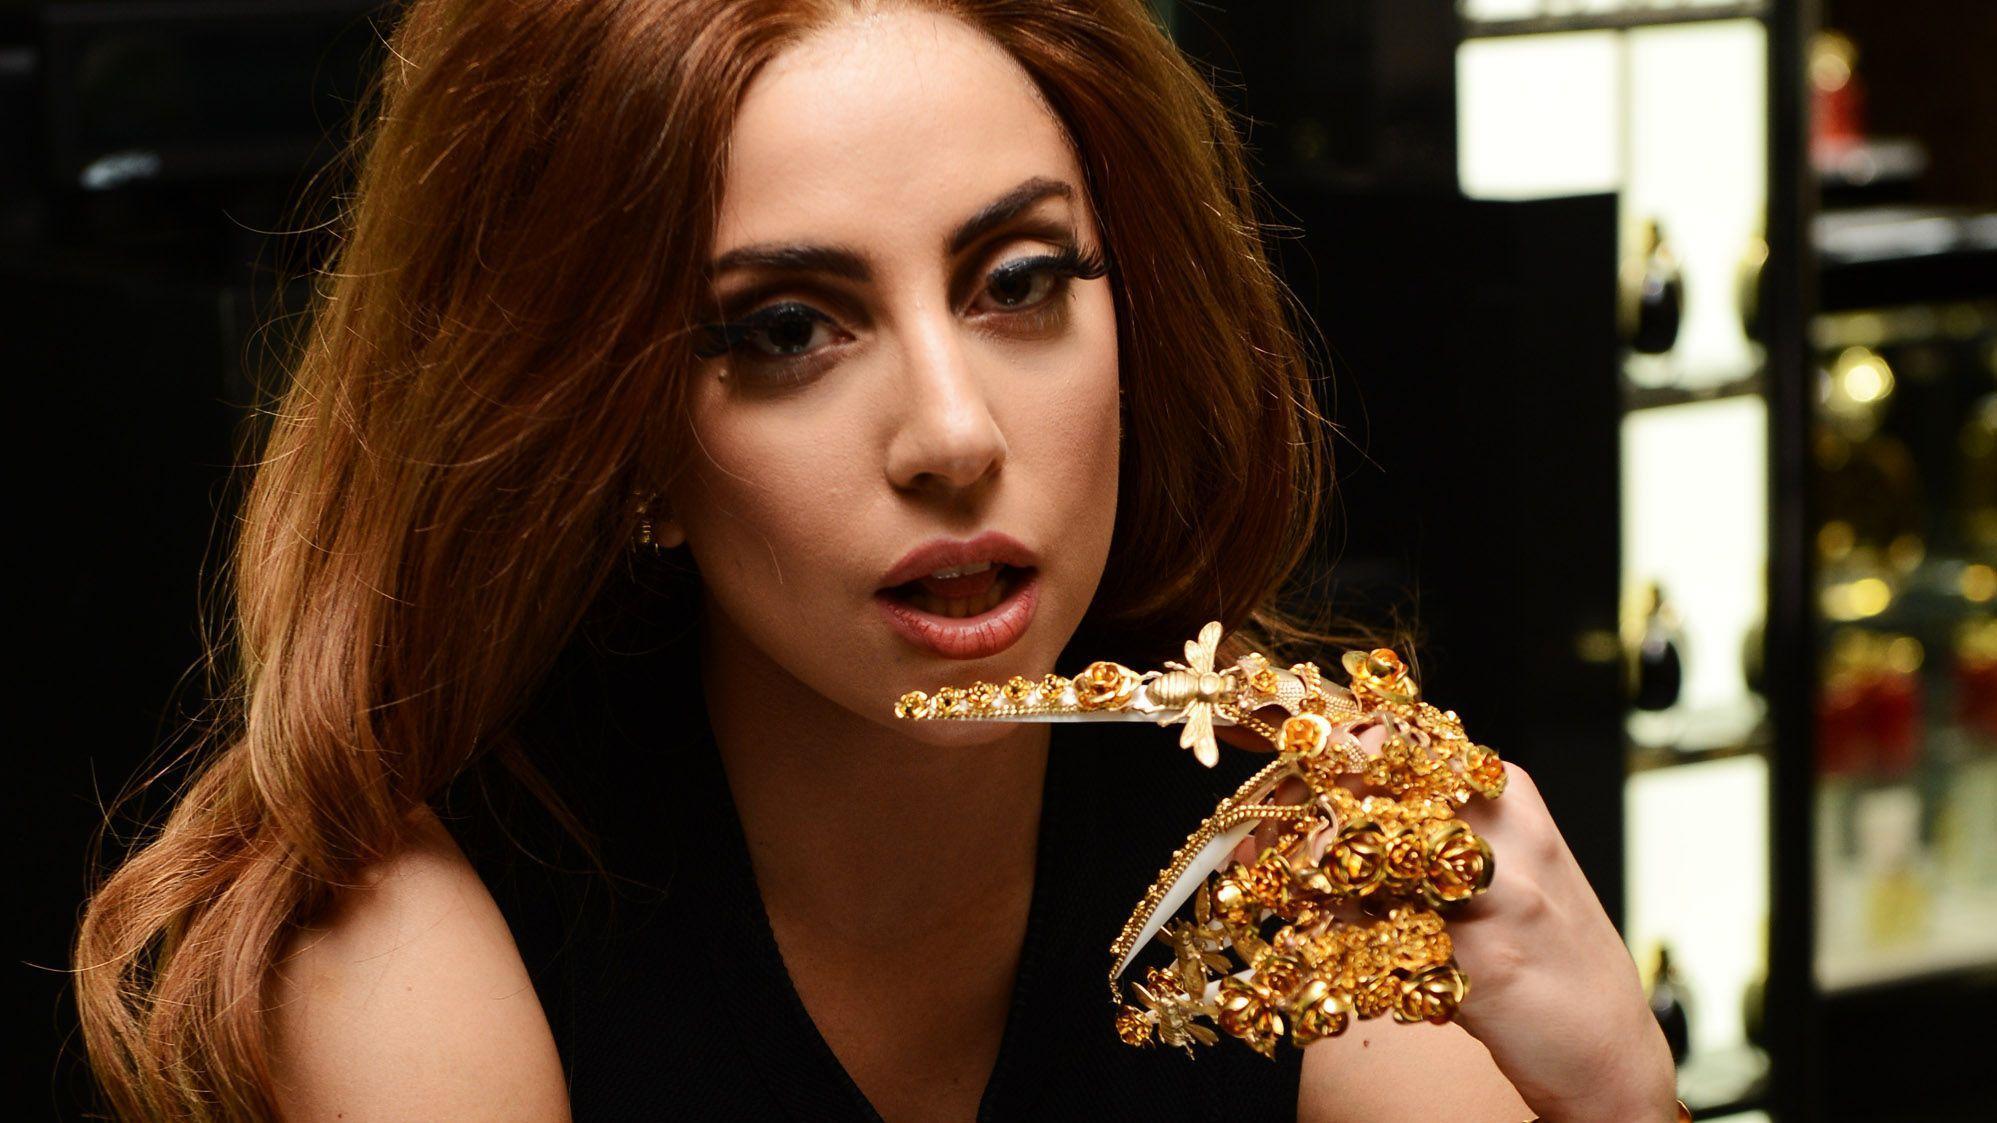 Lady Gaga photo gallery best Lady Gaga pics